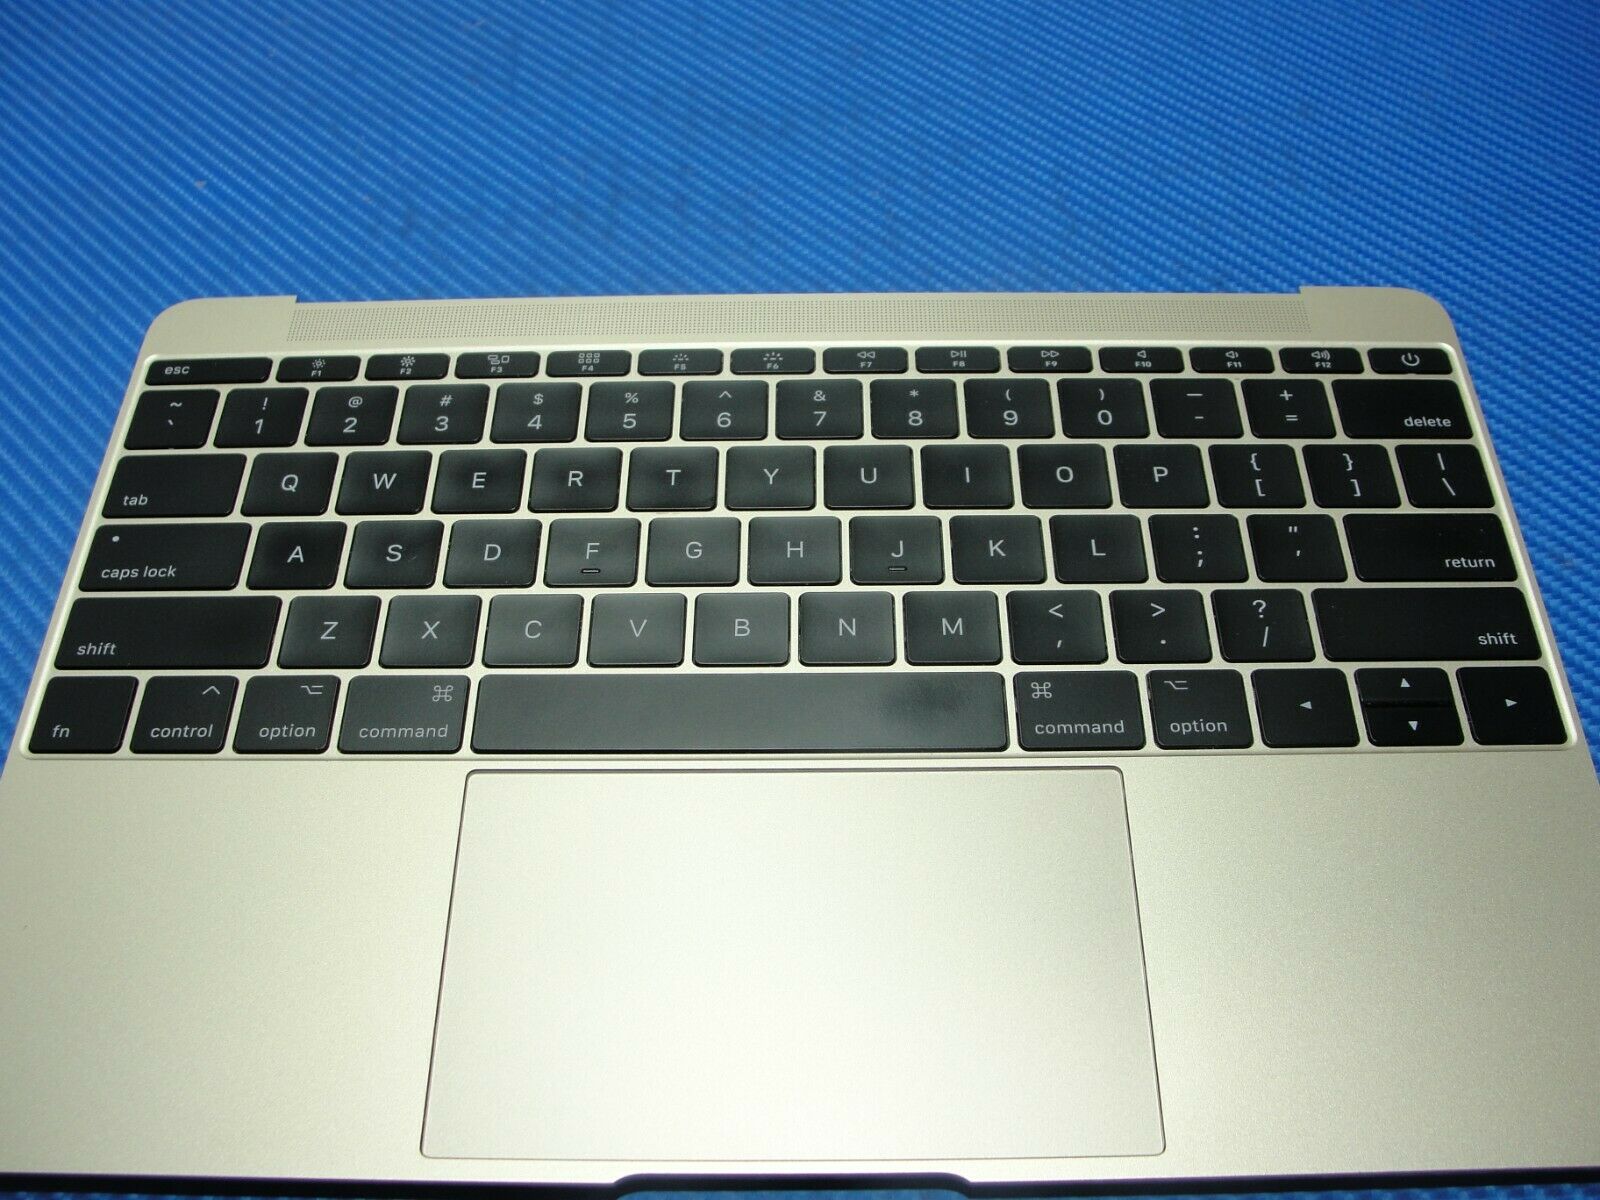 MacBook 12